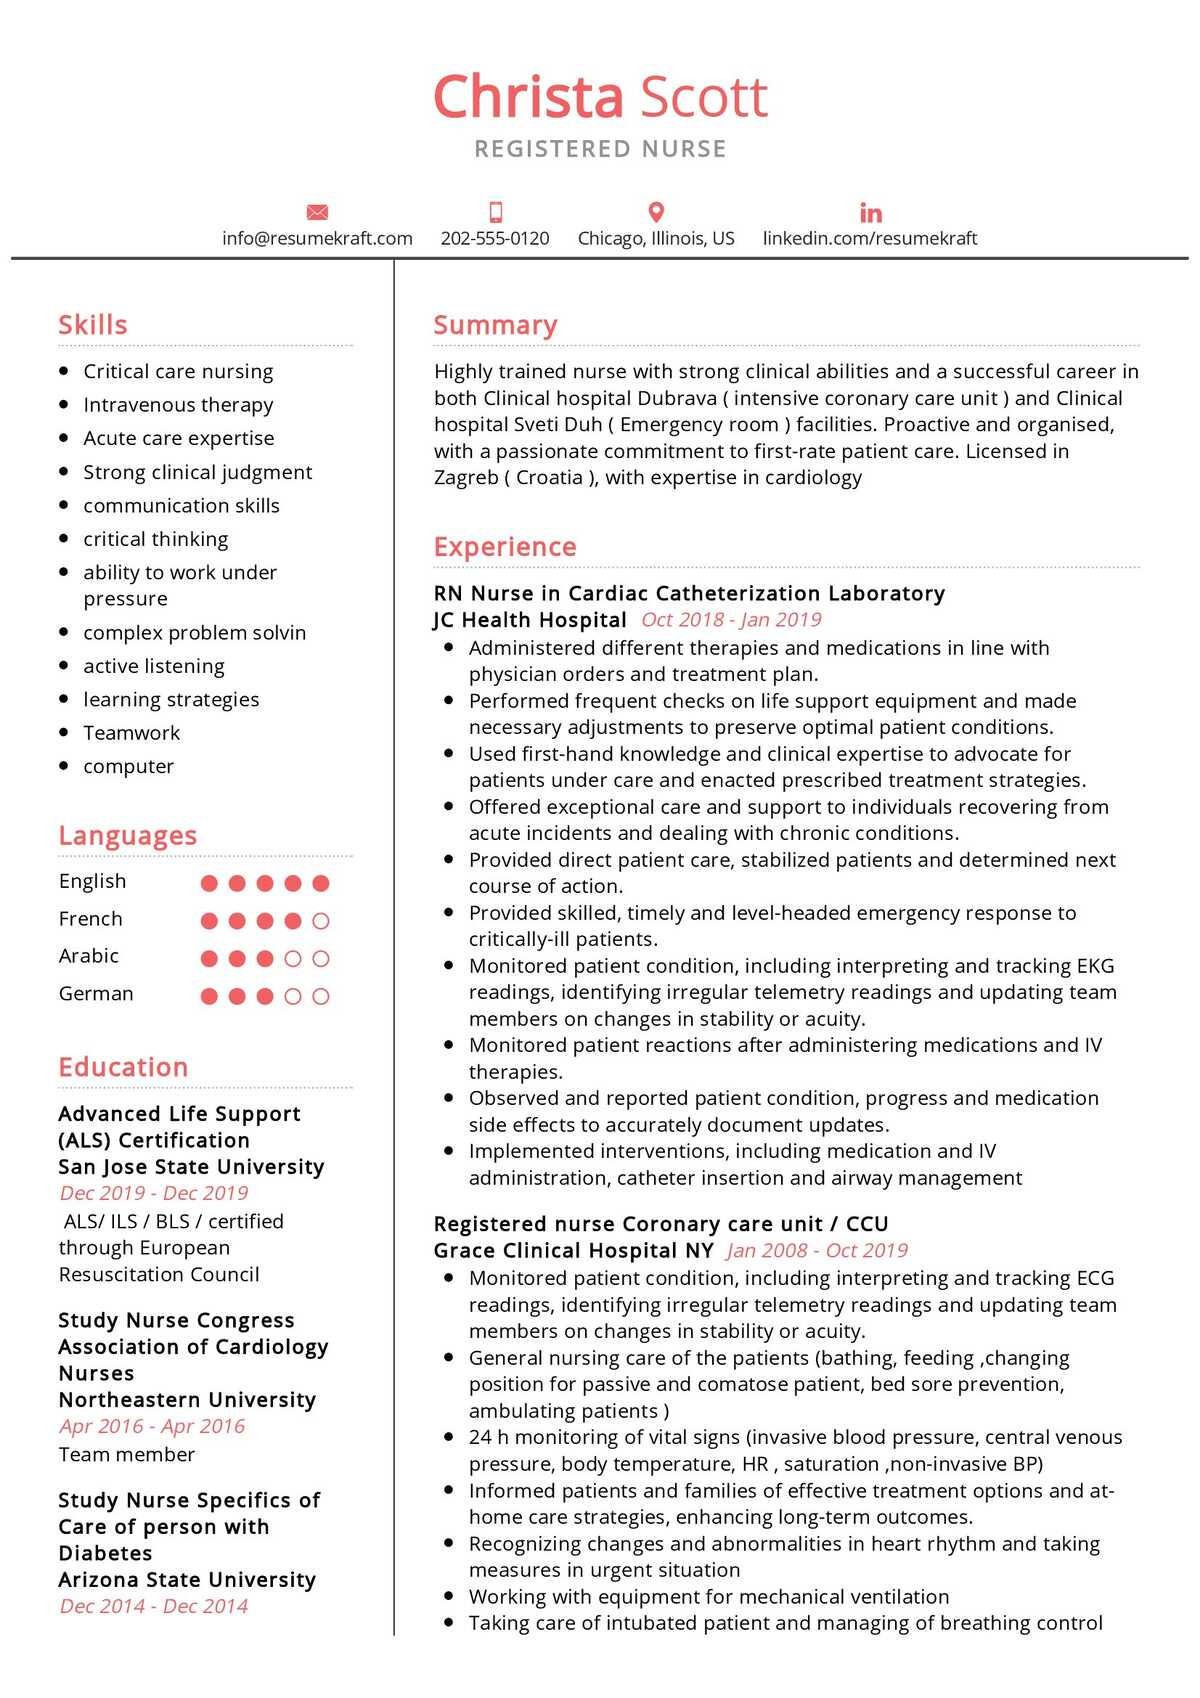 Operating Room Registered Nurse Resume Sample Registered Nurse Resume Example 2021 Writing Guide – Resumekraft